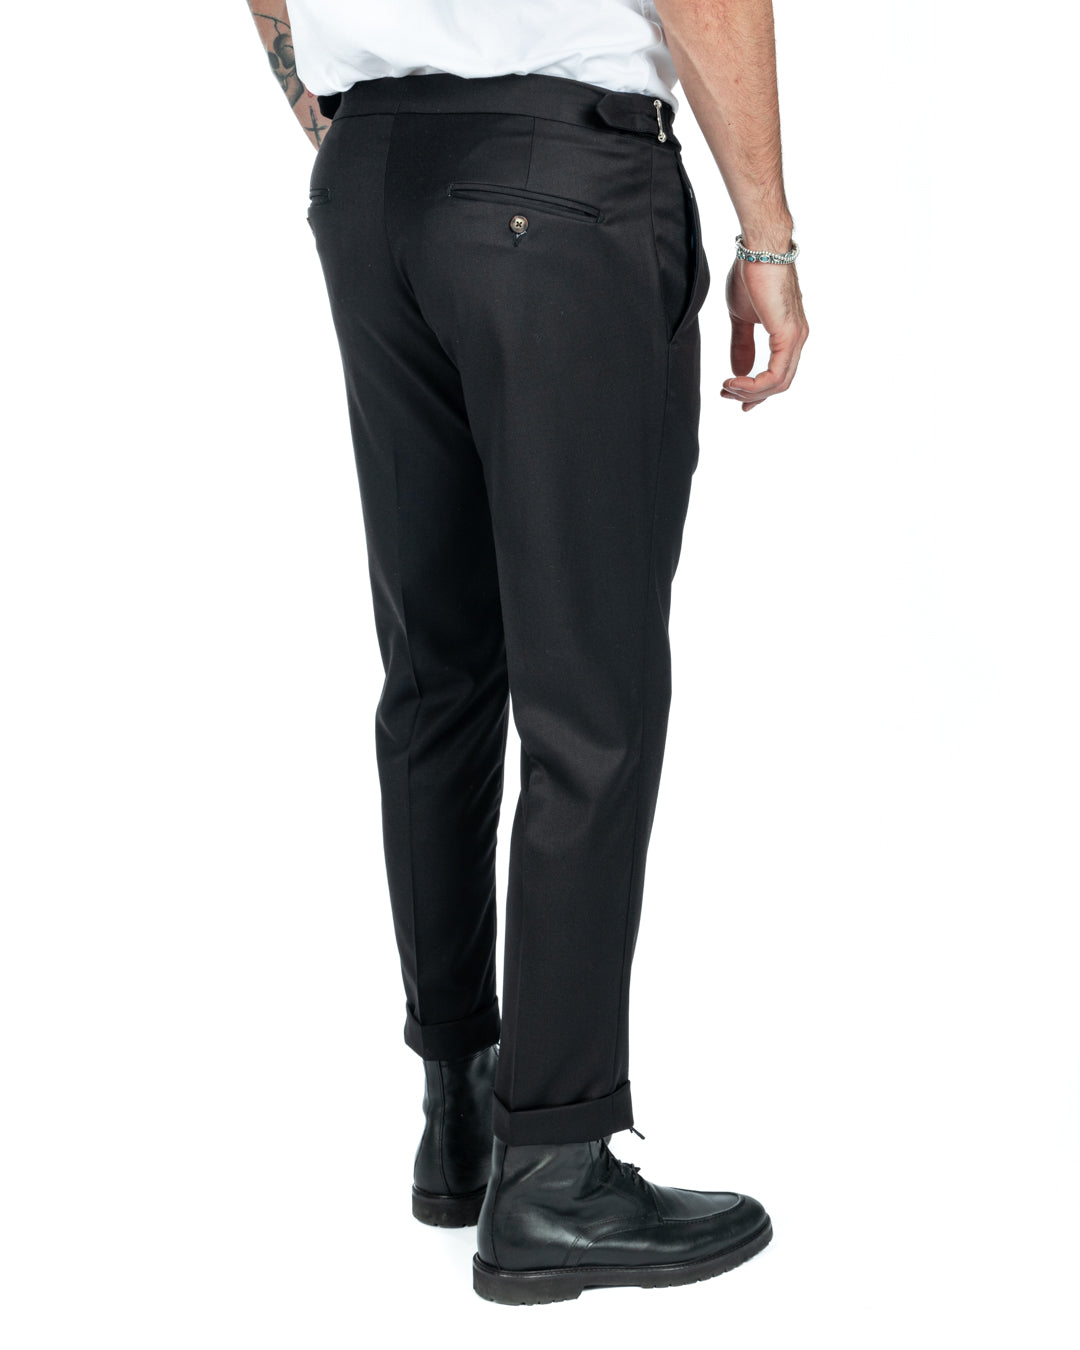 Otranto - pantalone nero con fibbie e pinces